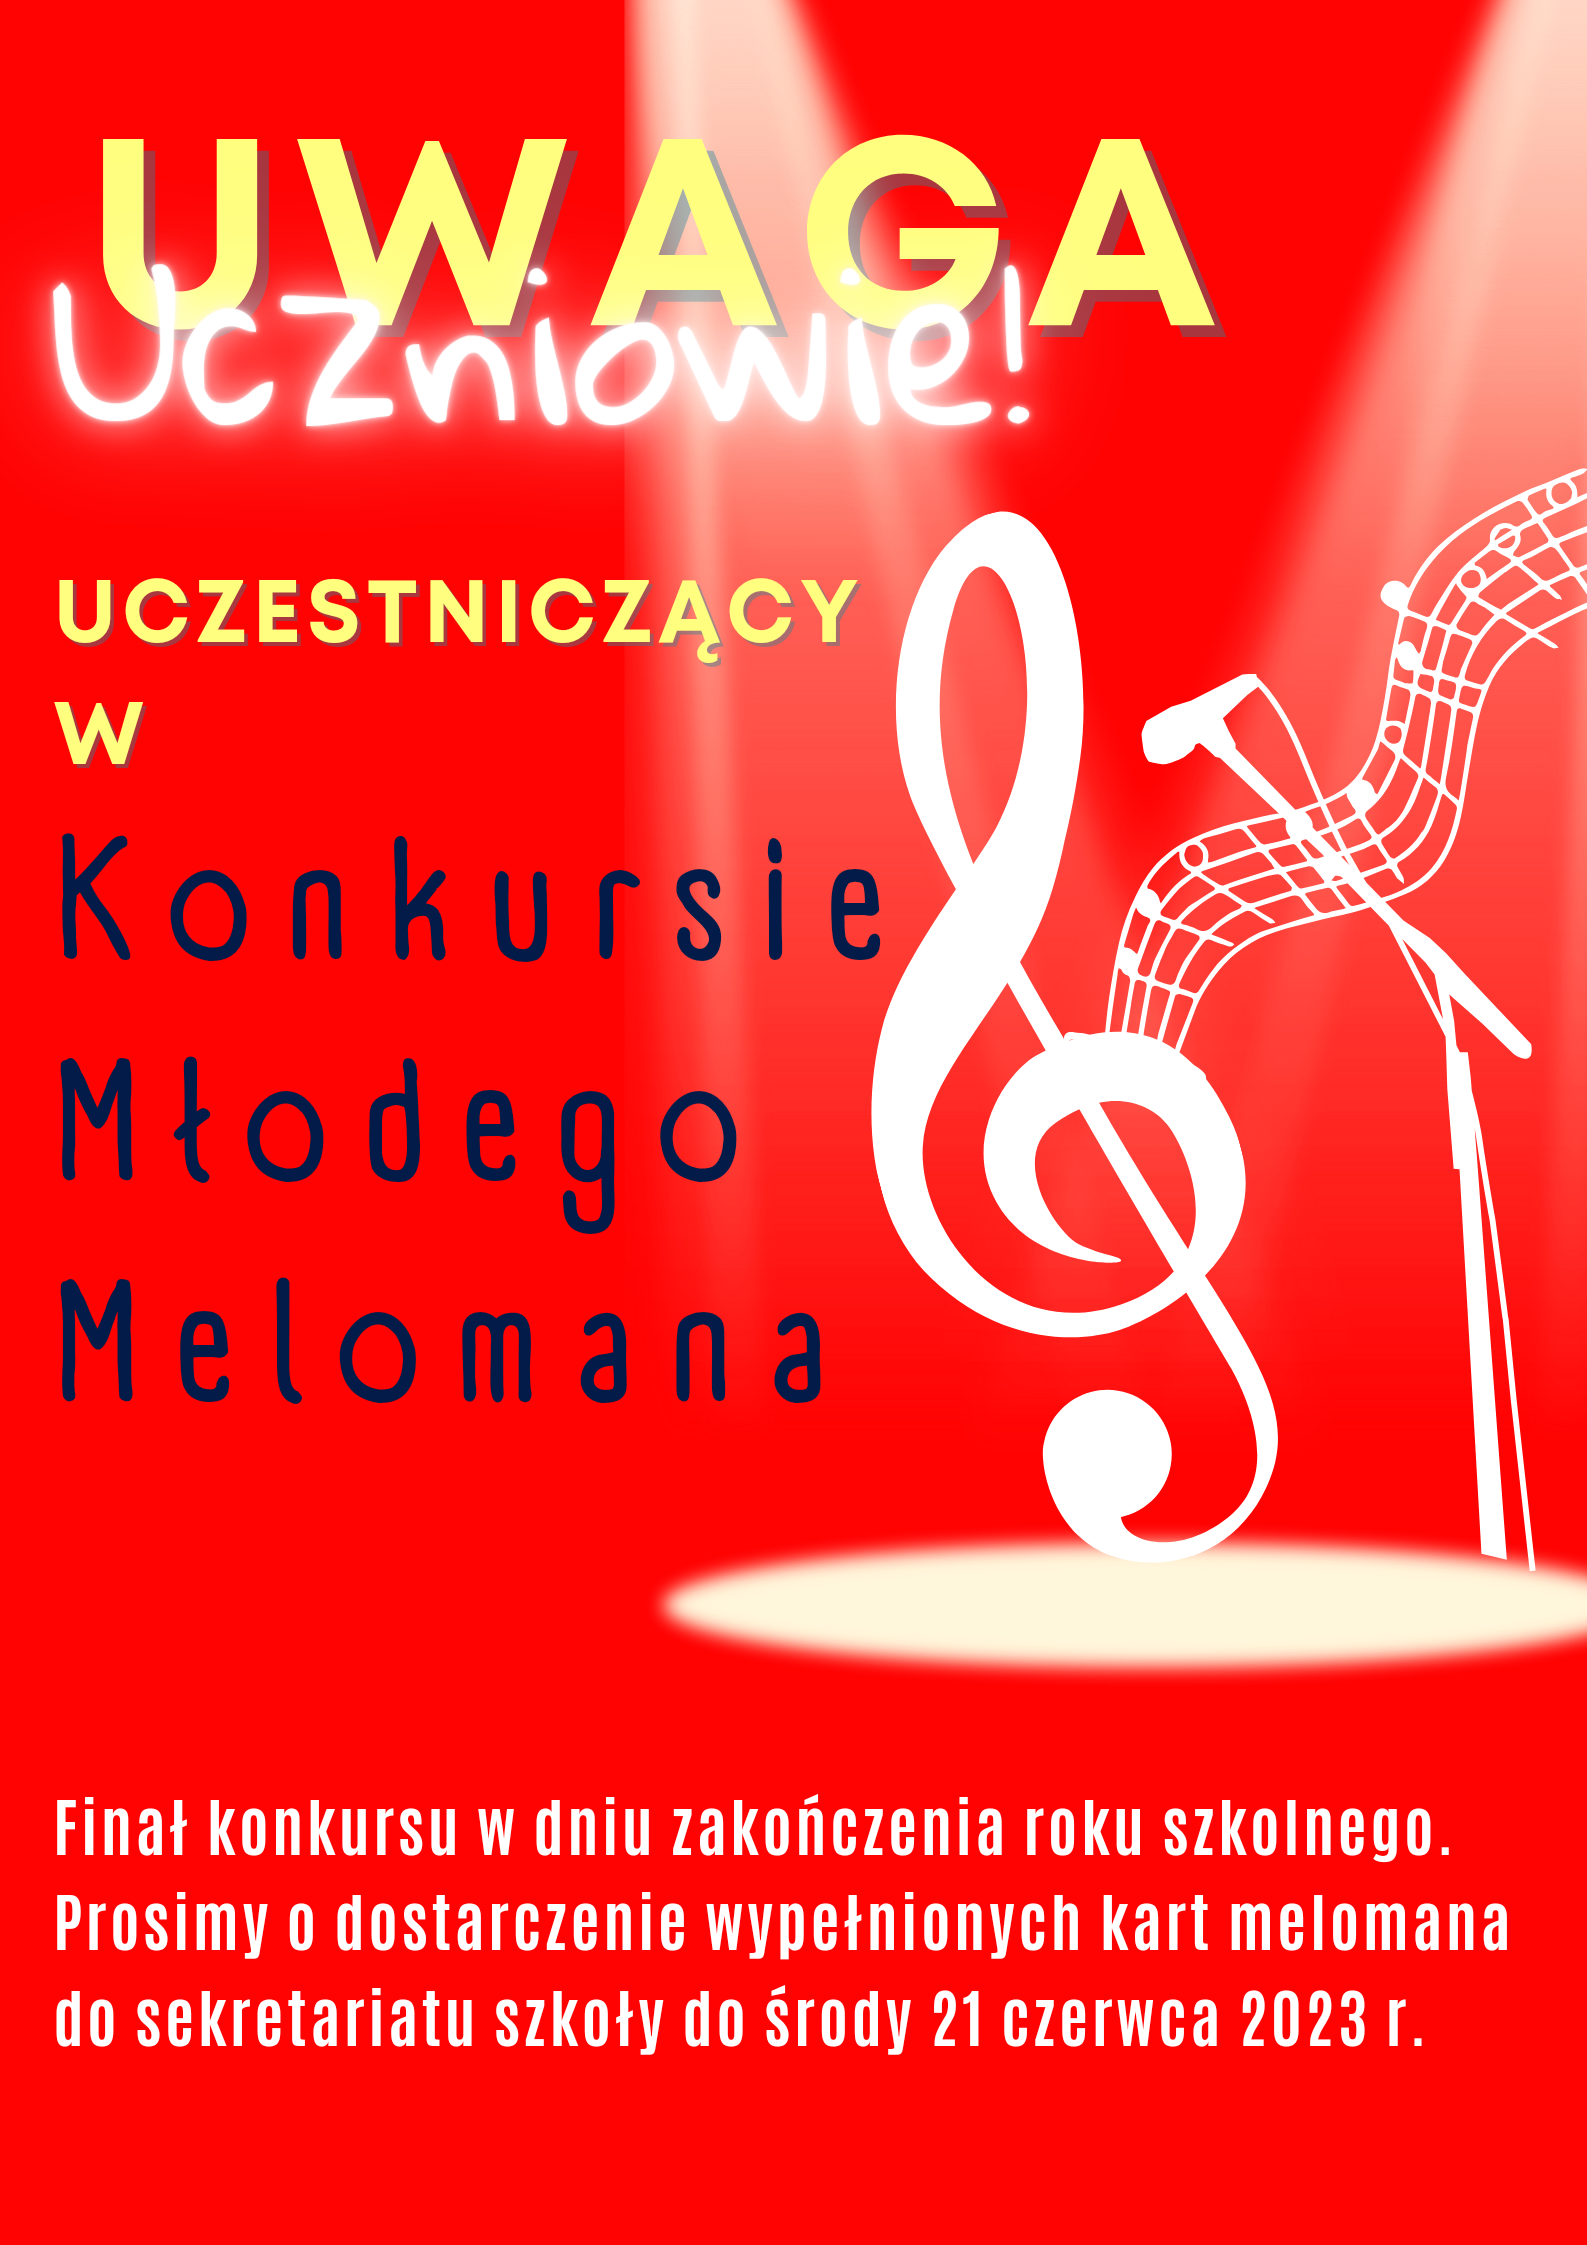 Plakat na czerwonym tle z grafiką klucza wiolinowego po prawej stronie oraz szczegółową informacją tekstową dot. konkursu Młodego Melomana